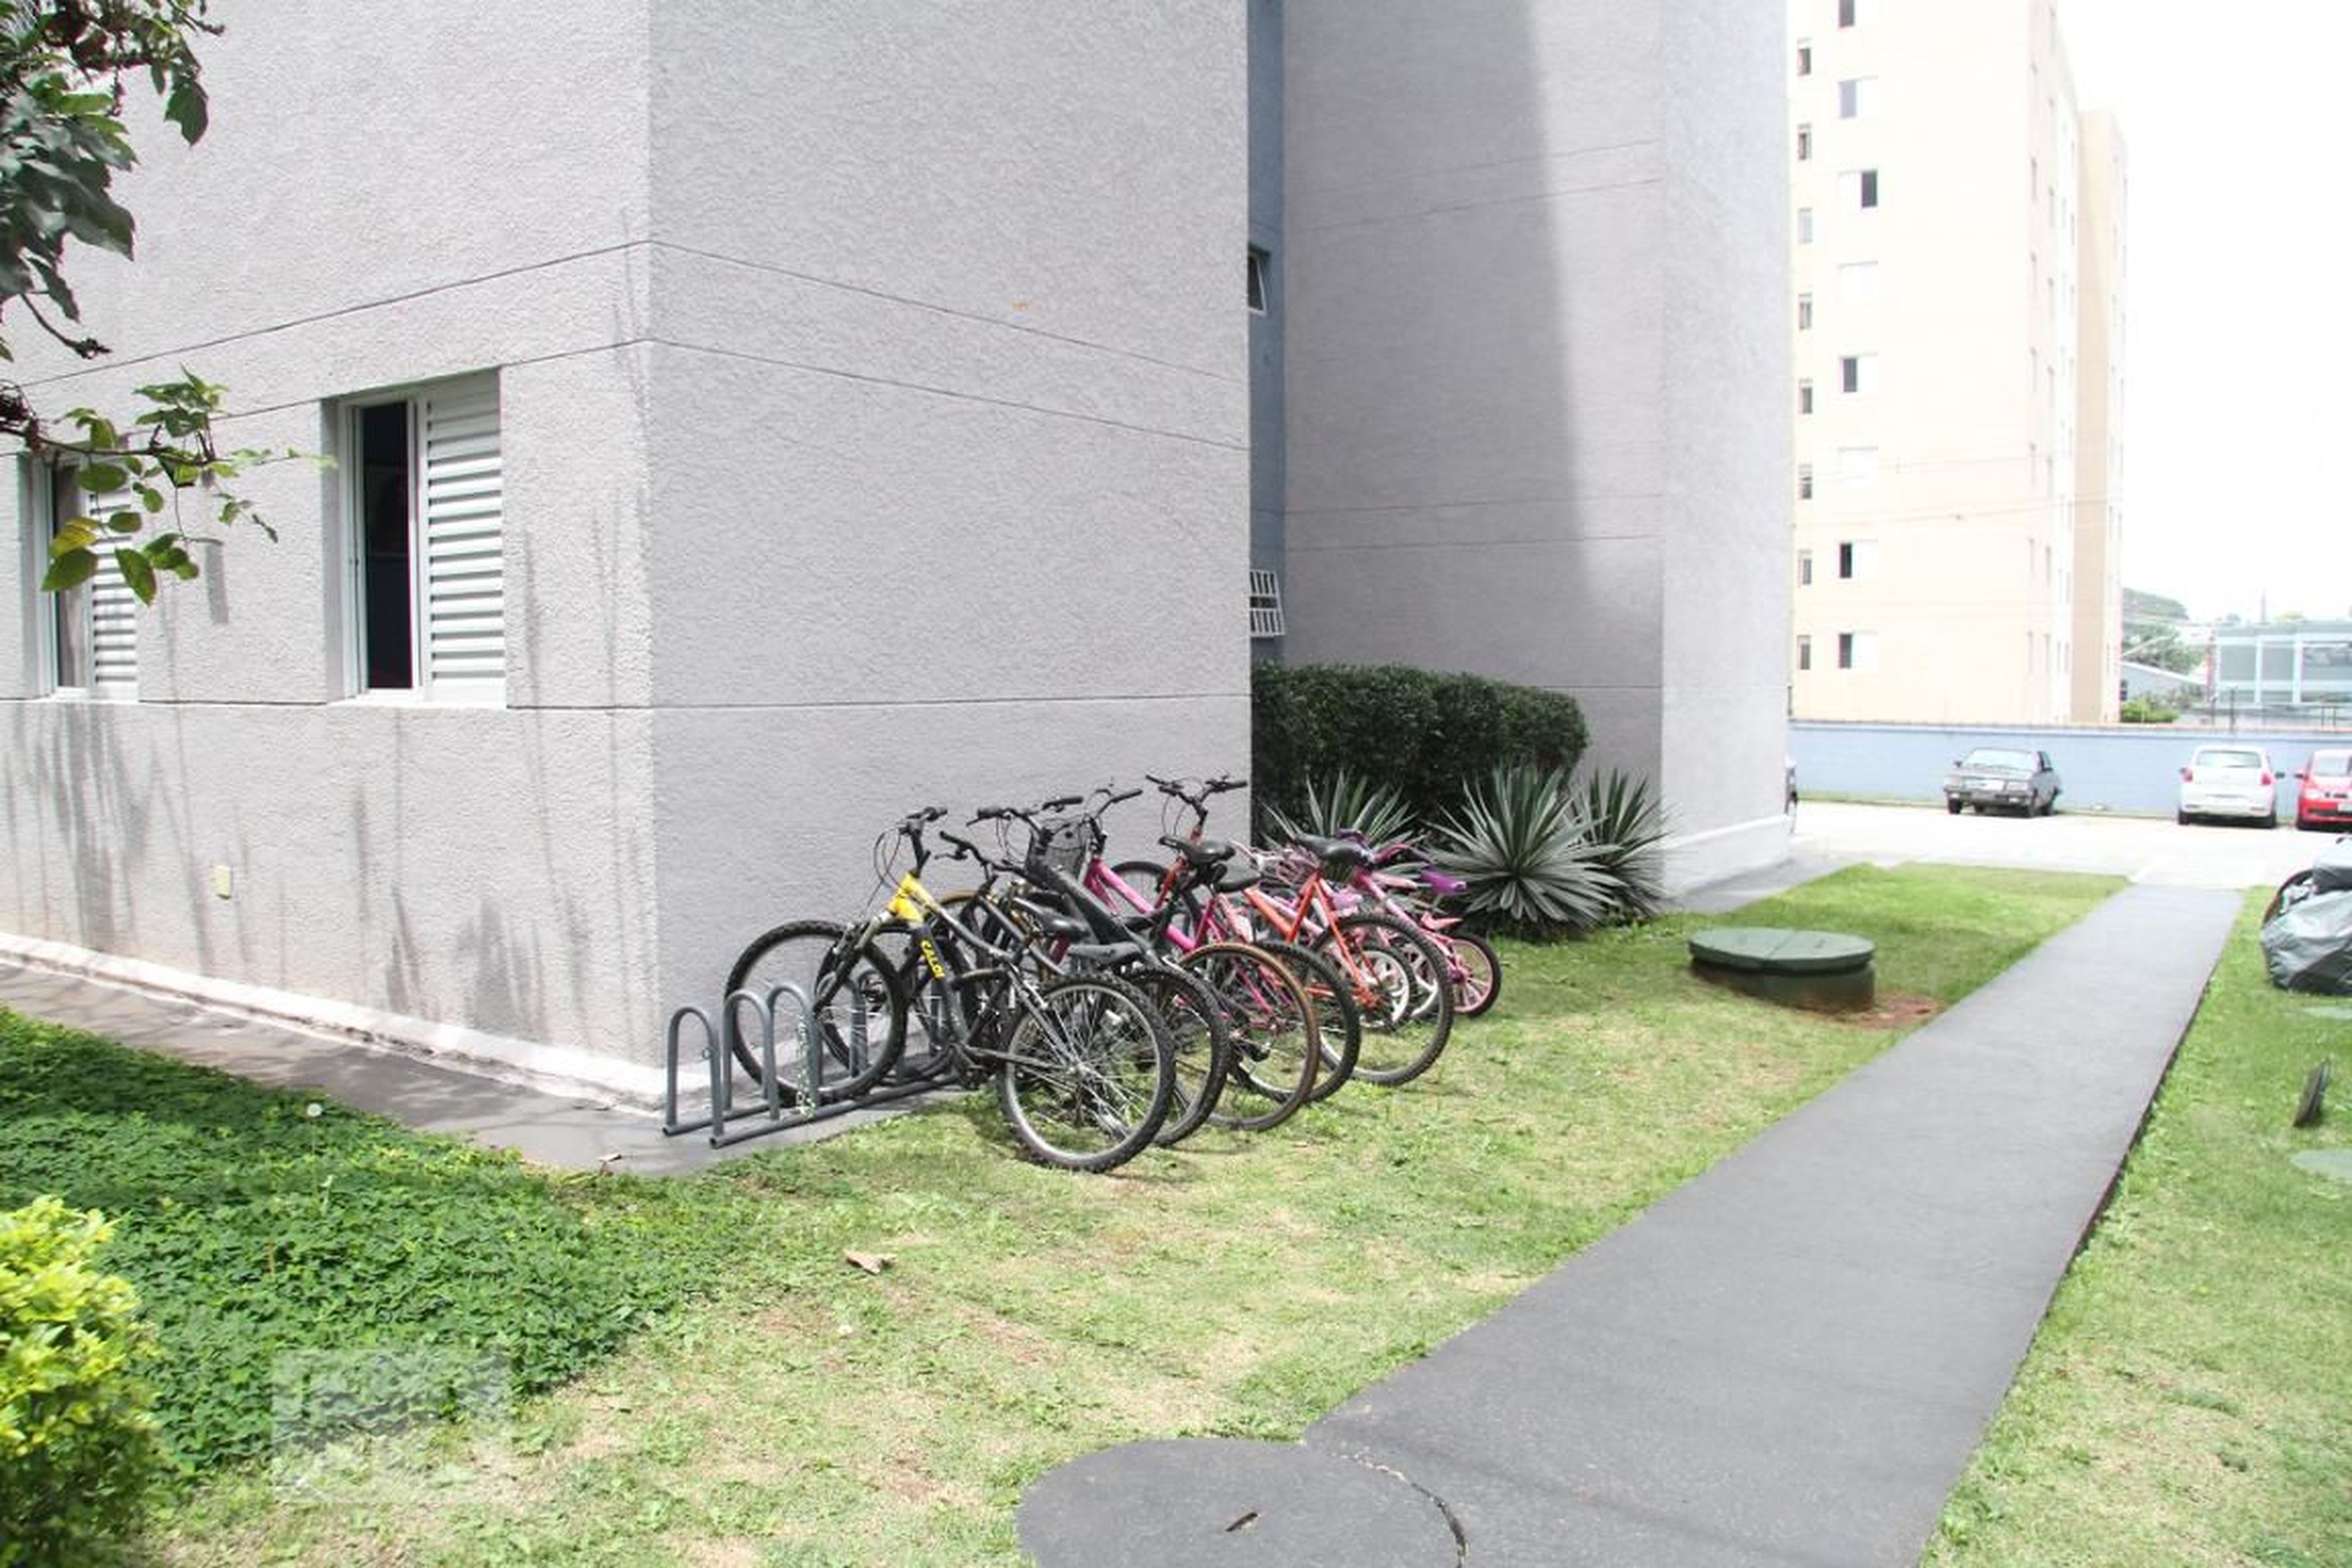 Bicicletario - Residencial Vitória Parque